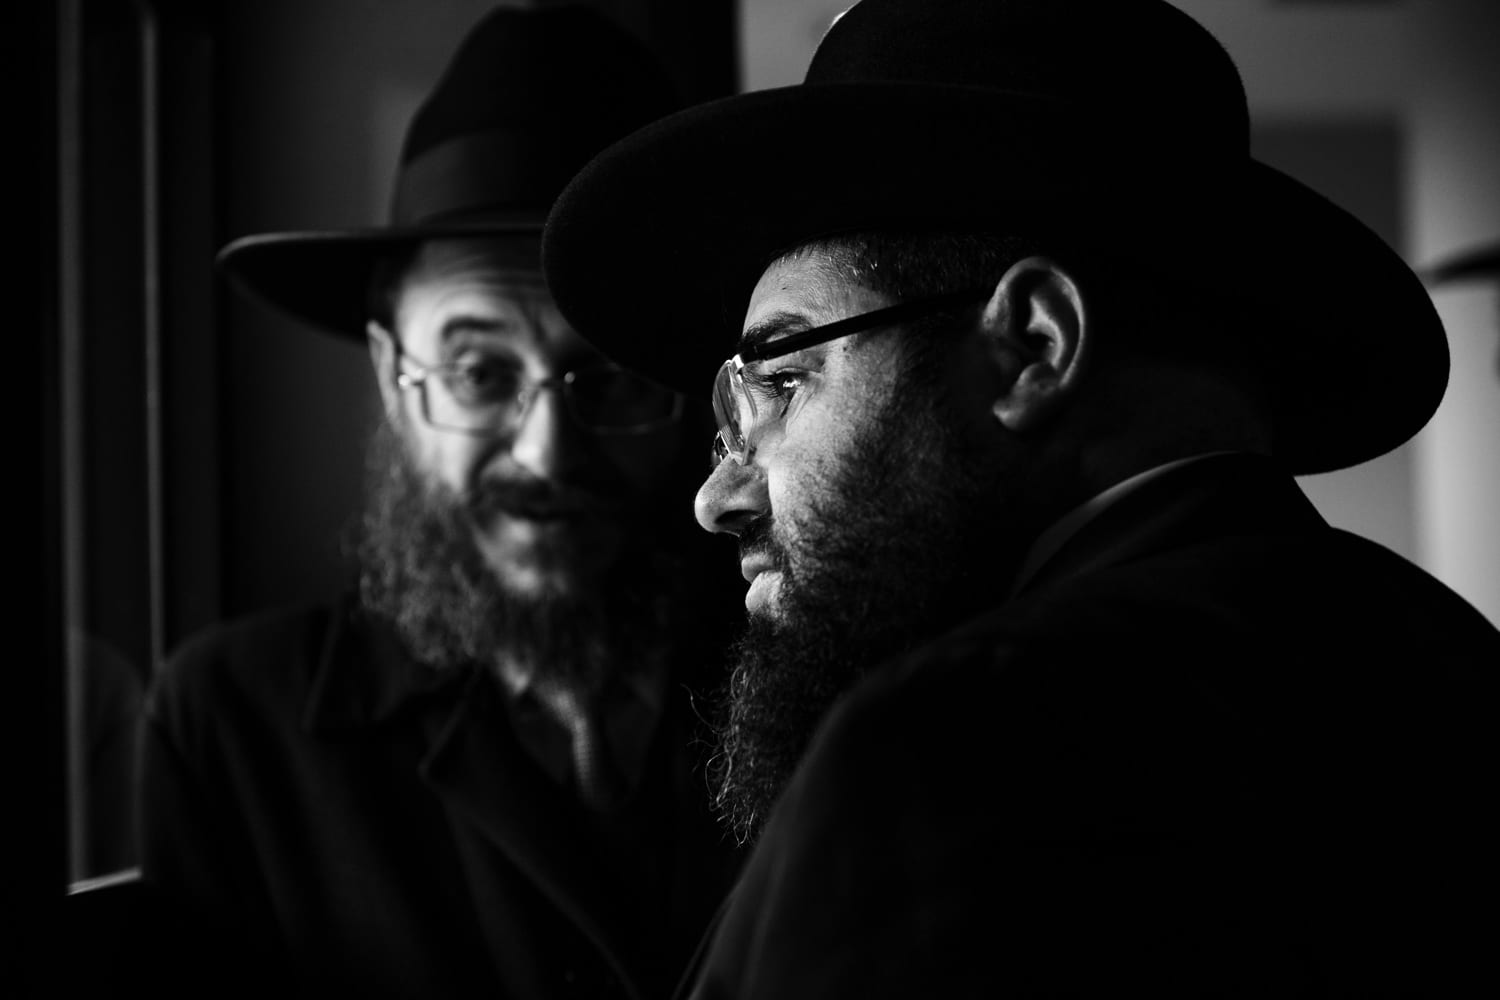 Boda judía en Madrid